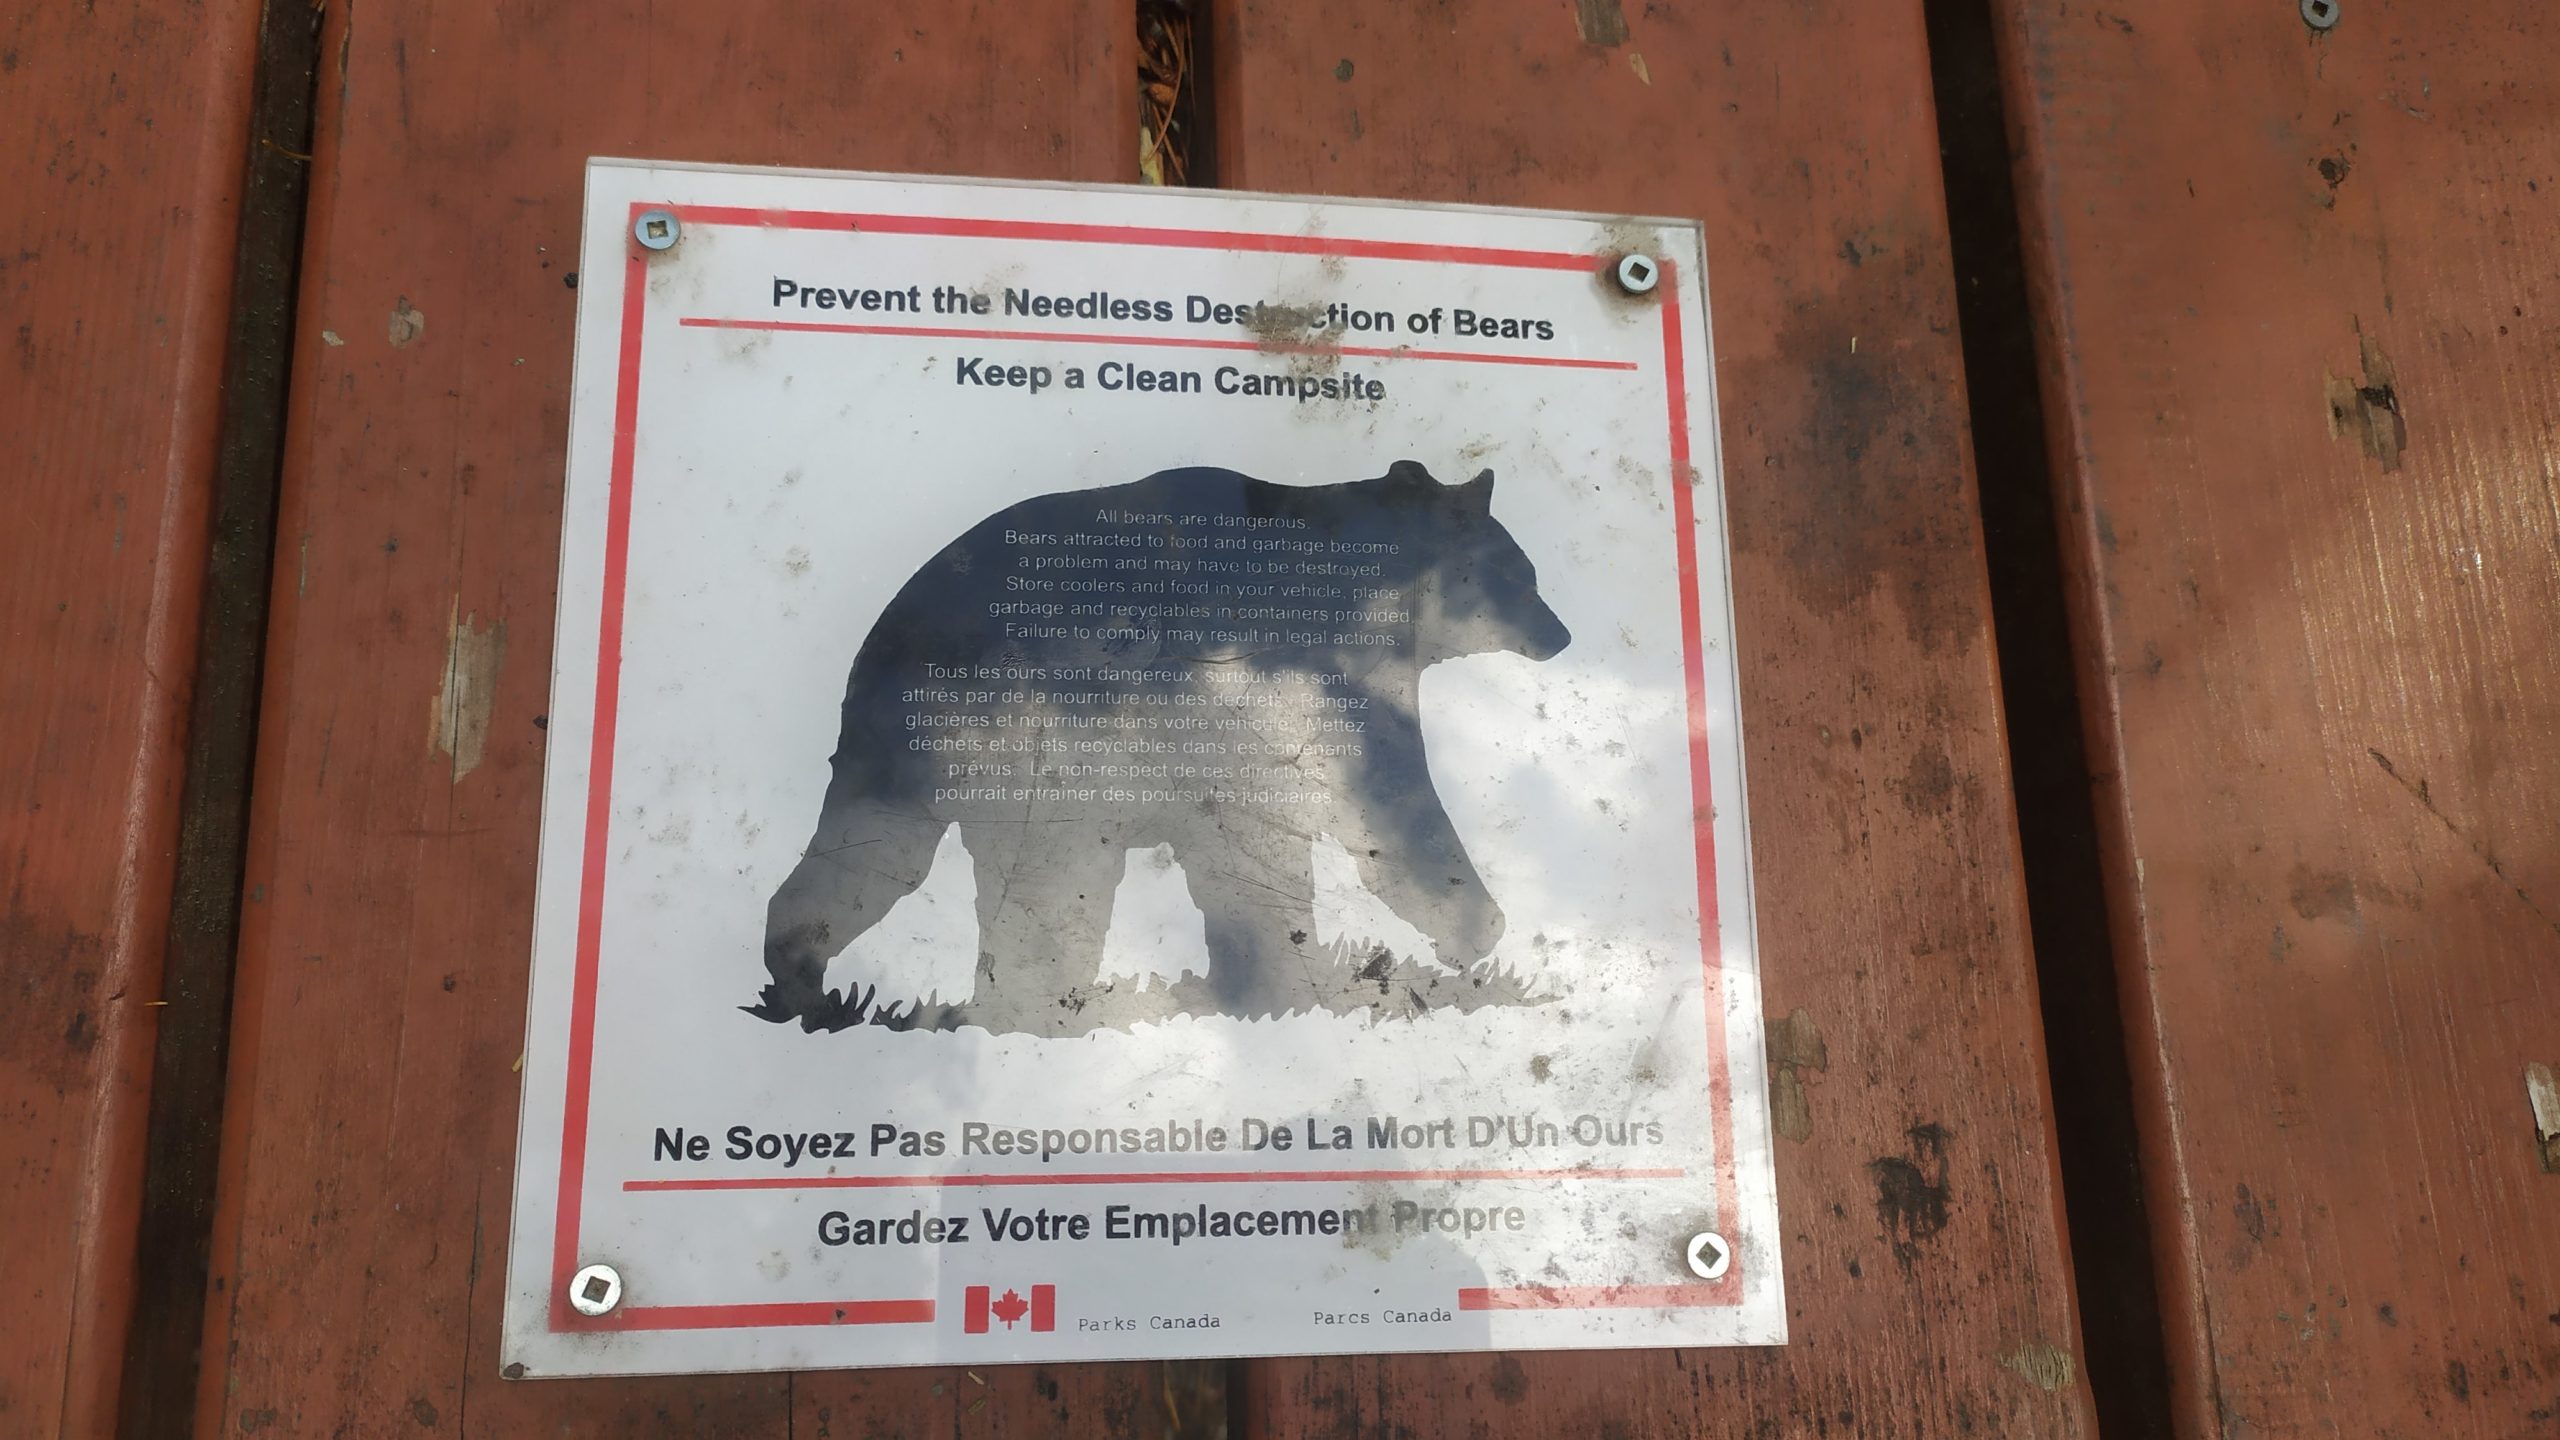 Un panneau informant de notre arrivée au pays des ours et invitant les campeurs à faire preuve de prudence et précaution